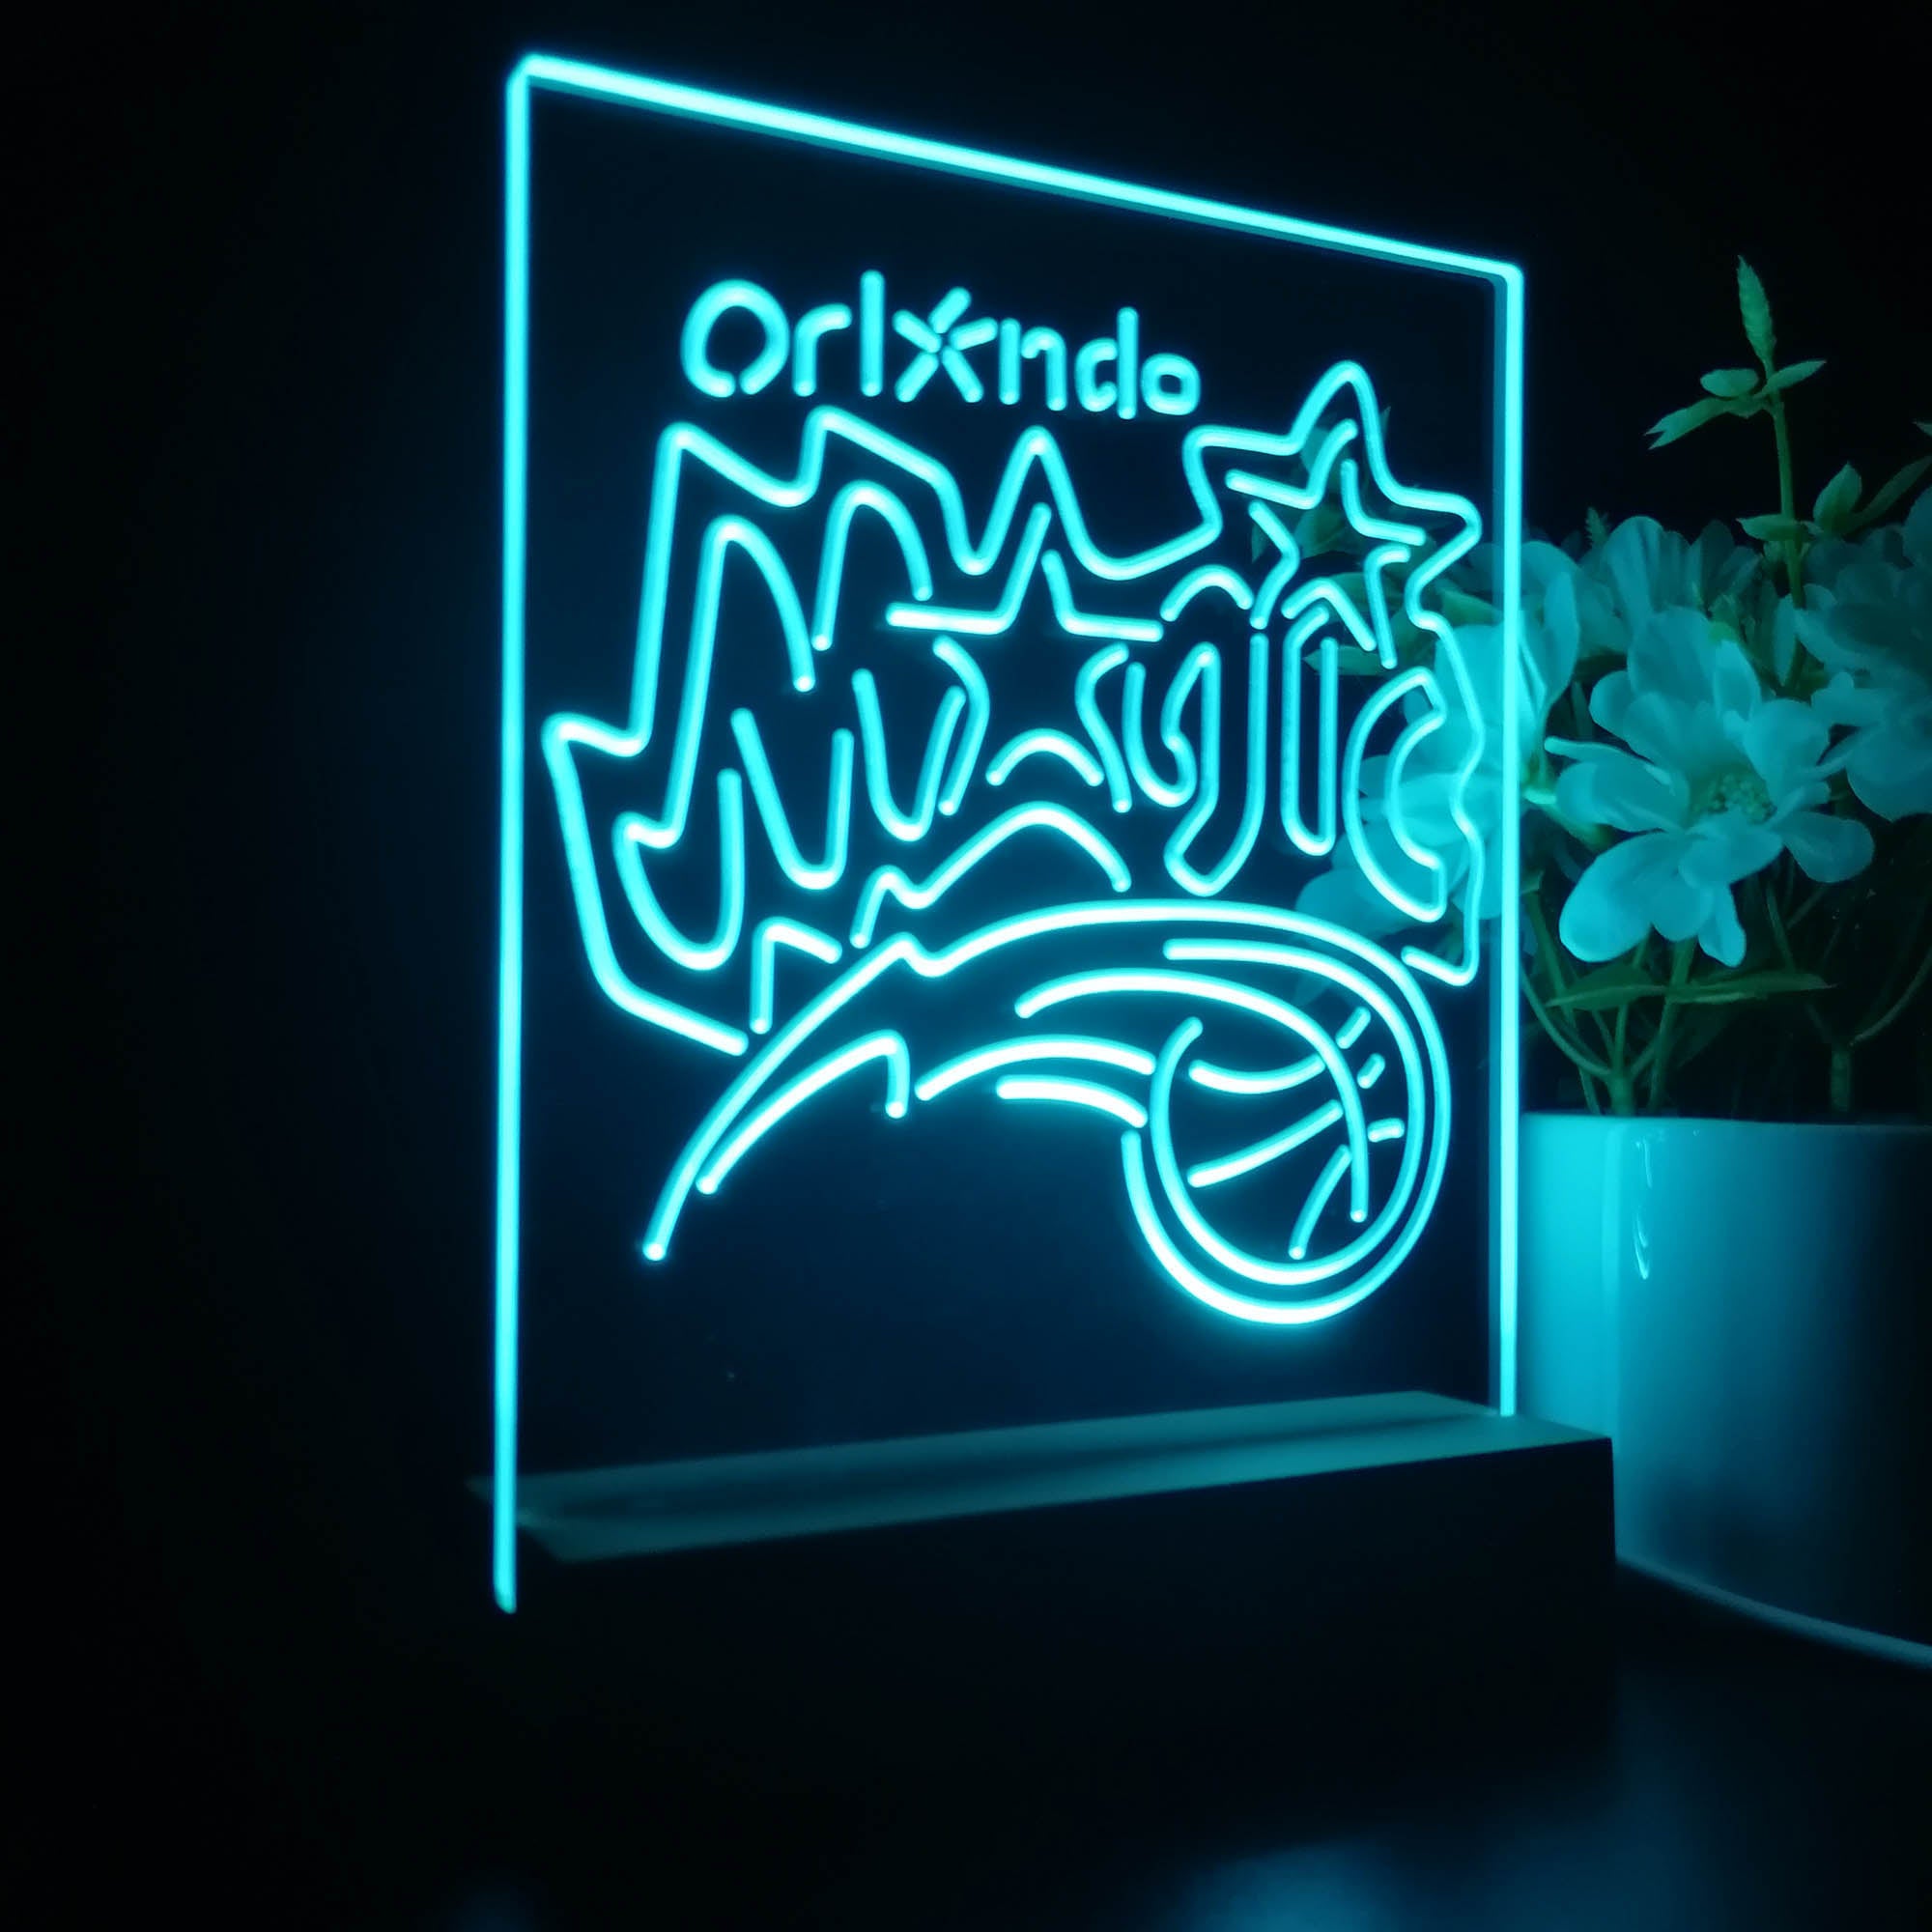 Orlando Magic Sport Team Night Lamp 3D Illusion Lamp